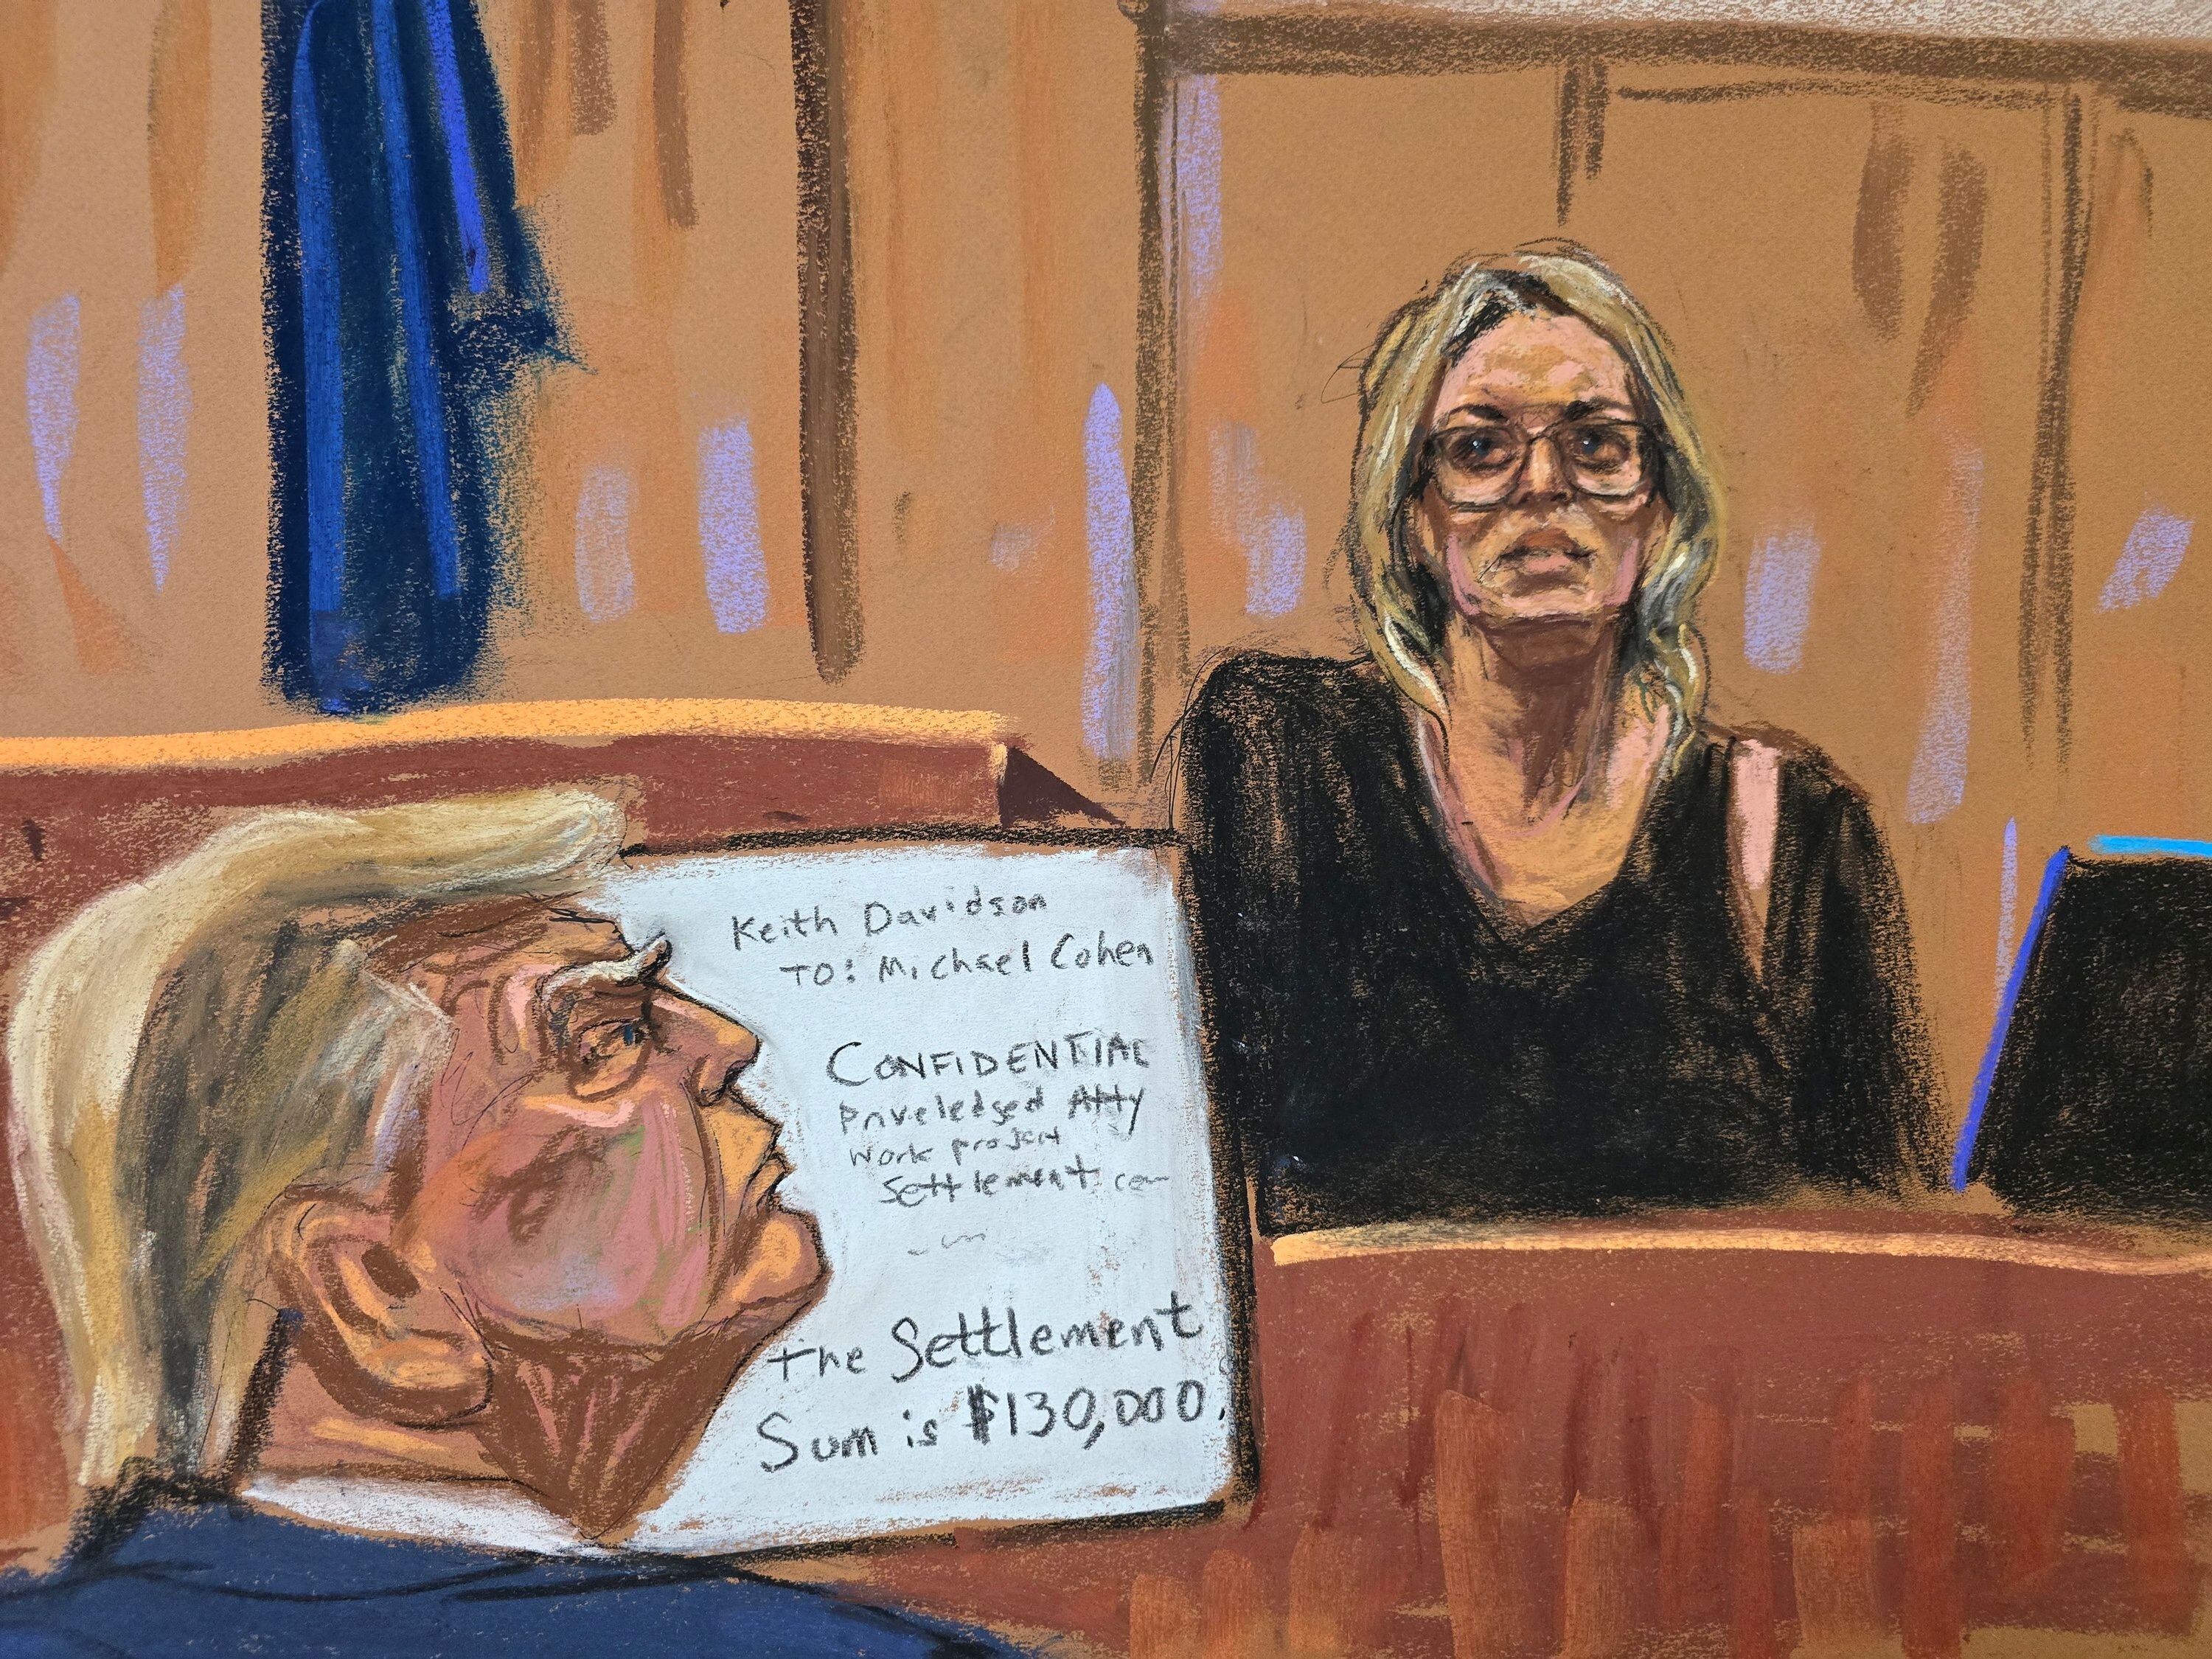 Un momento histórico se vivió en la sala del tribunal cuando Donald Trump se enfrentó directamente a Stormy Daniels, la mujer en el centro del escándalo que lo involucra en delitos graves. (REUTERS/Jane Rosenberg)